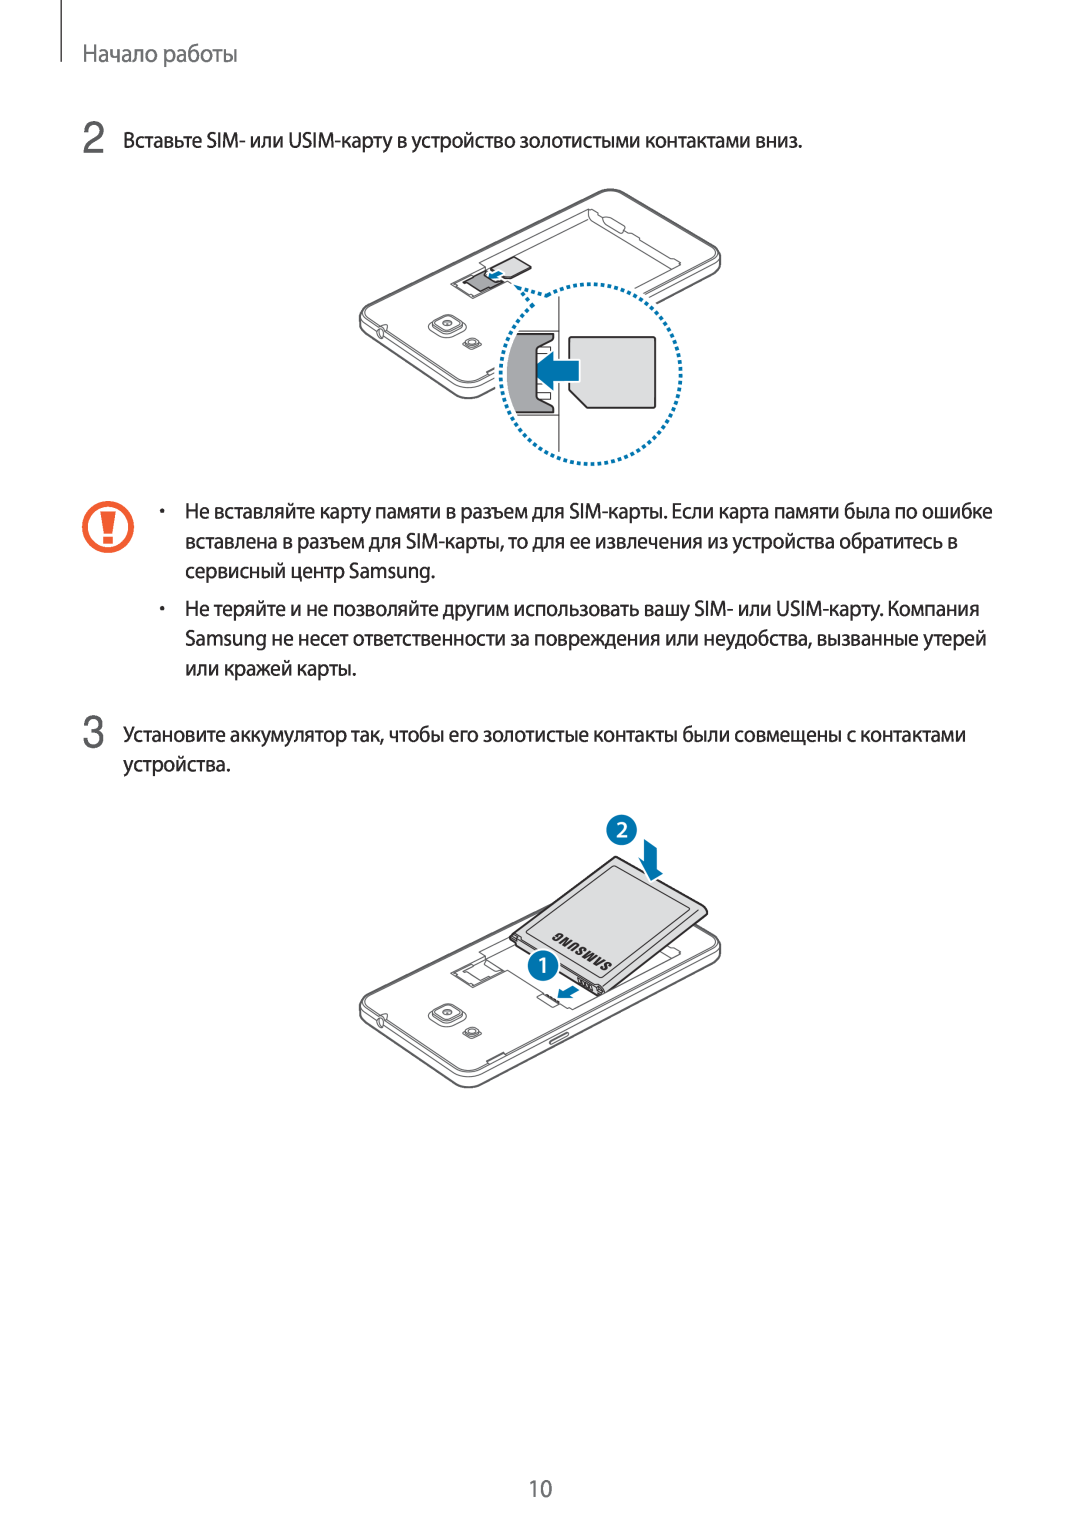 Samsung SM-G531FZWASER manual Начало работы, 2 Вставьте SIM- или USIM-карту в устройство золотистыми контактами вниз 